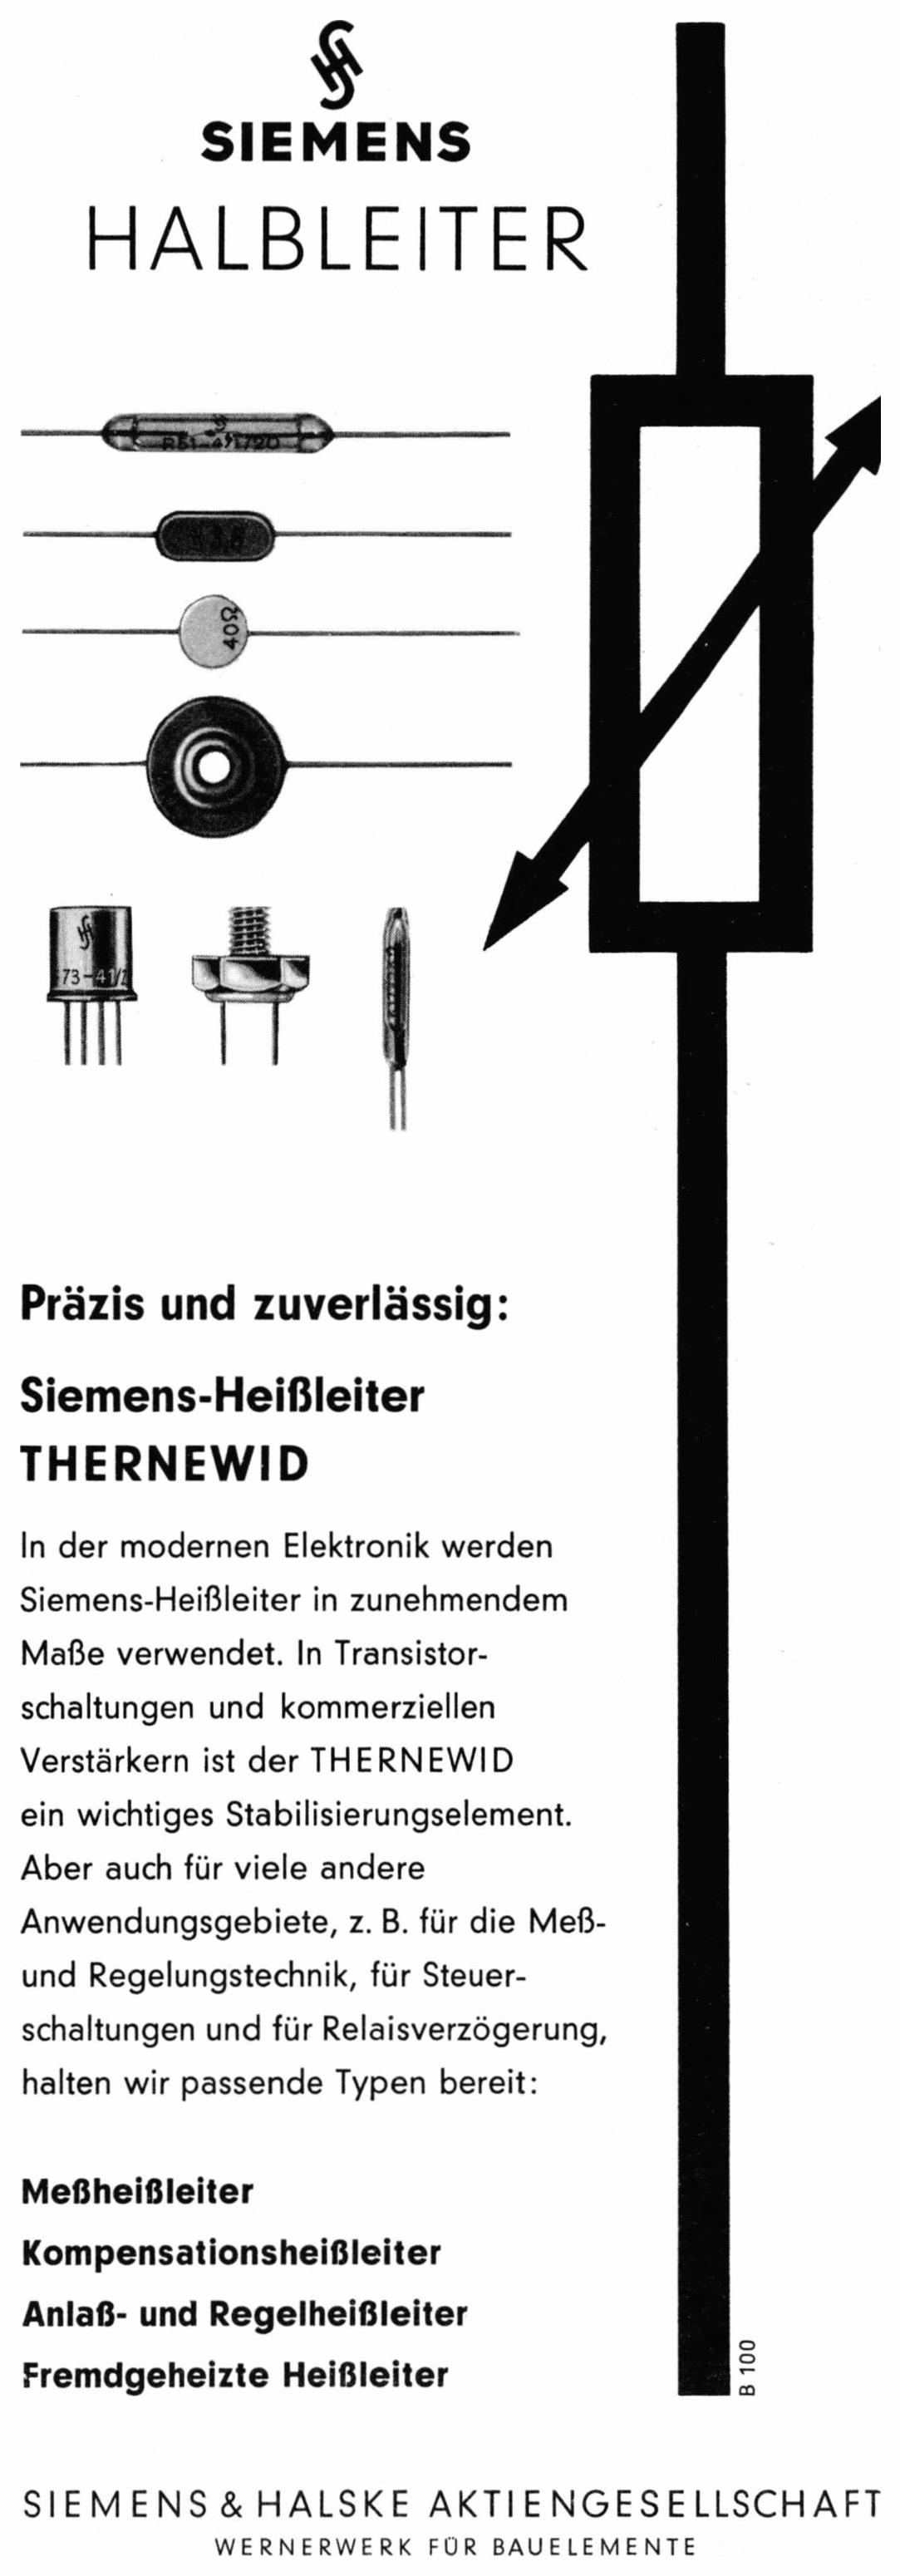 Siemens 1961 8.jpg